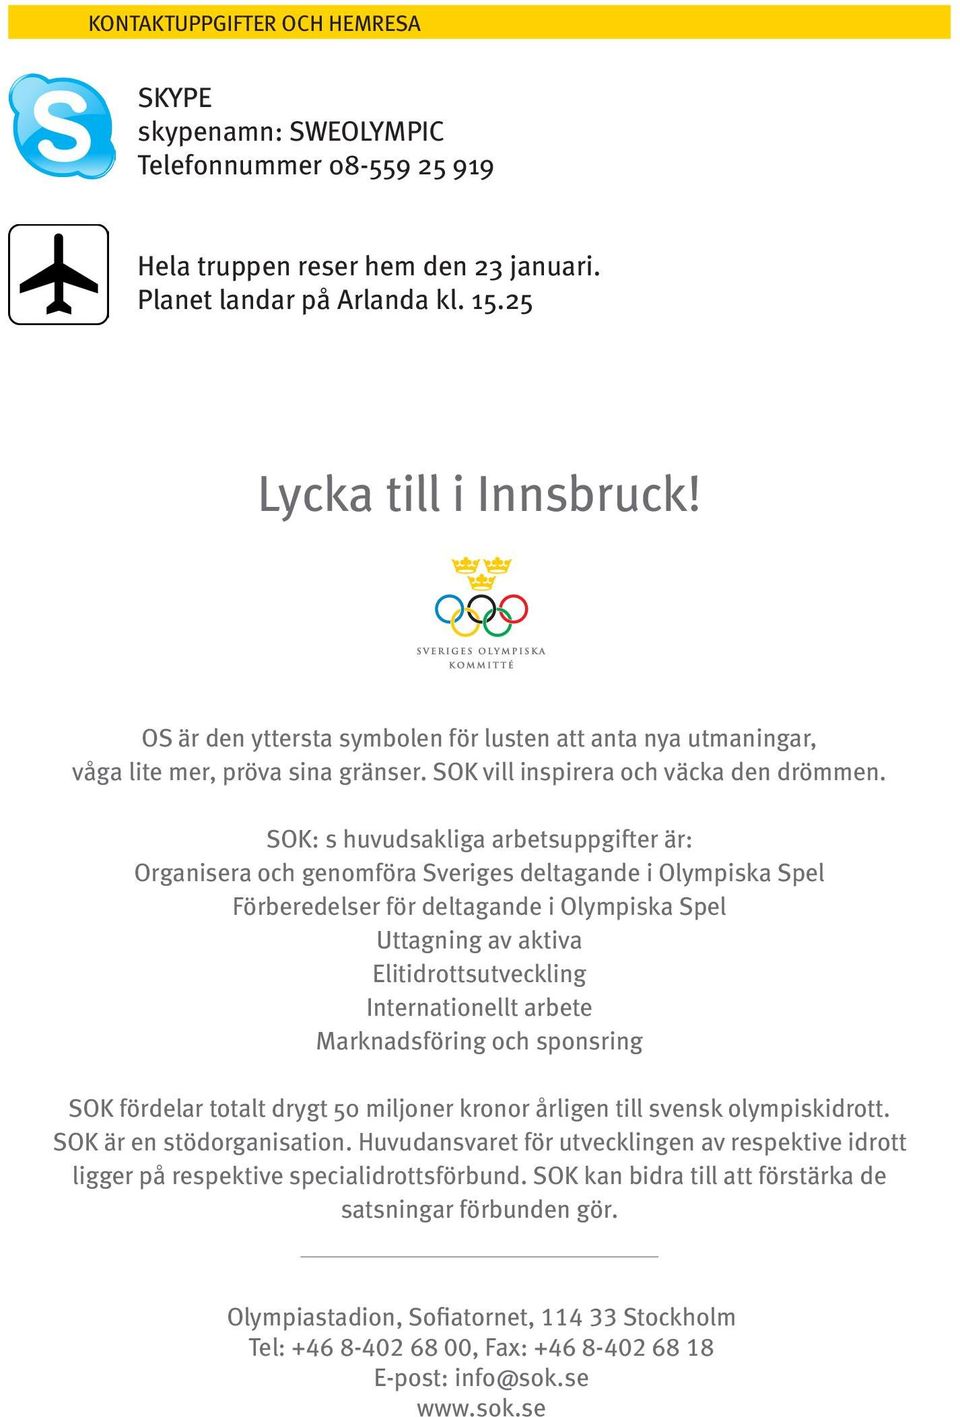 SOK: s huvudsakliga arbetsuppgifter är: Organisera och genomföra Sveriges deltagande i Olympiska Spel Förberedelser för deltagande i Olympiska Spel Uttagning av aktiva Elitidrottsutveckling